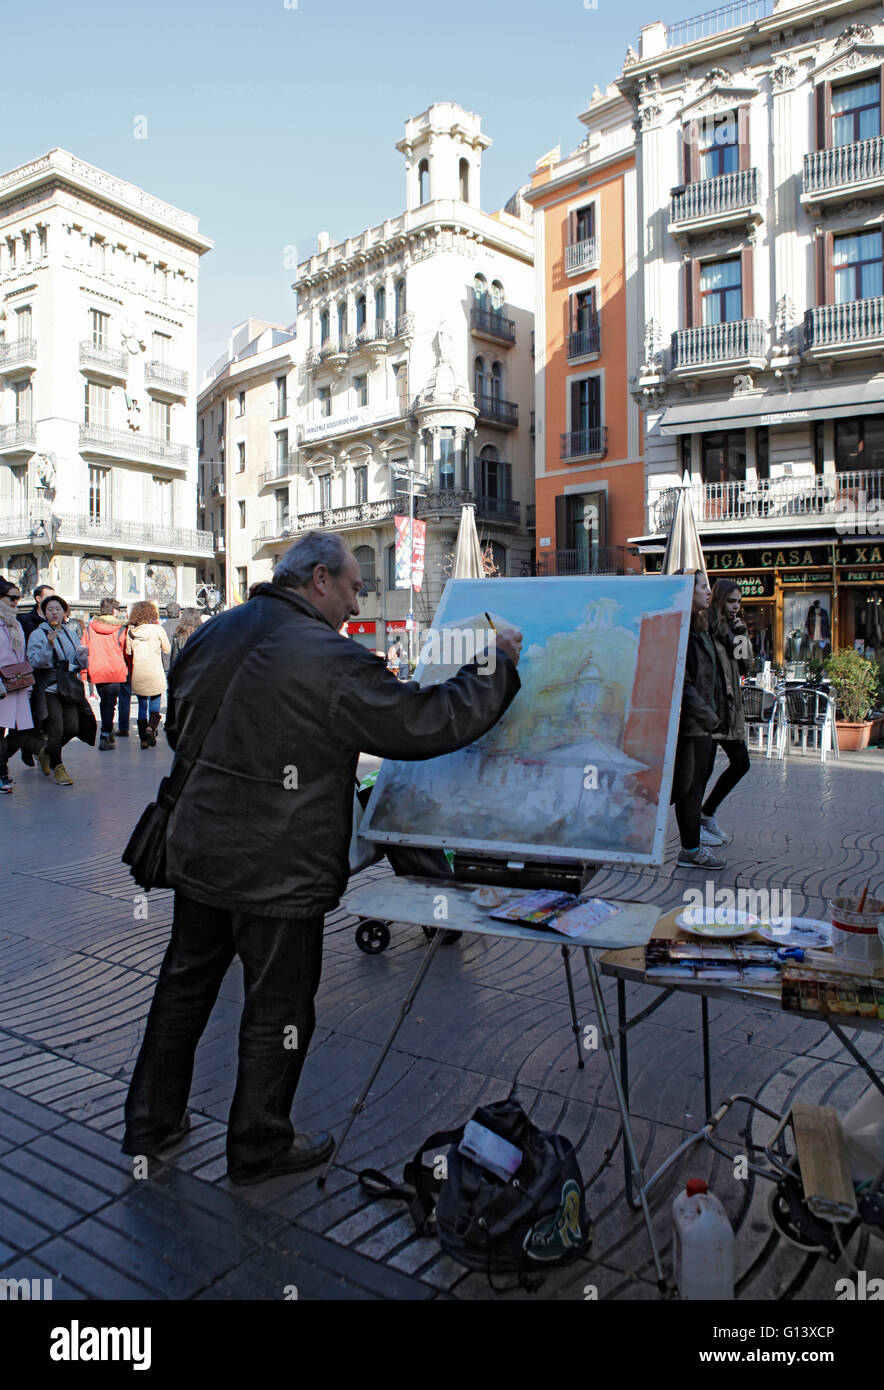 Un artista que pinta/ pintura sobre la rambla, o las ramblas, es una calle  en el centro de Barcelona, muy popular entre los turistas y lugareños  Fotografía de stock - Alamy